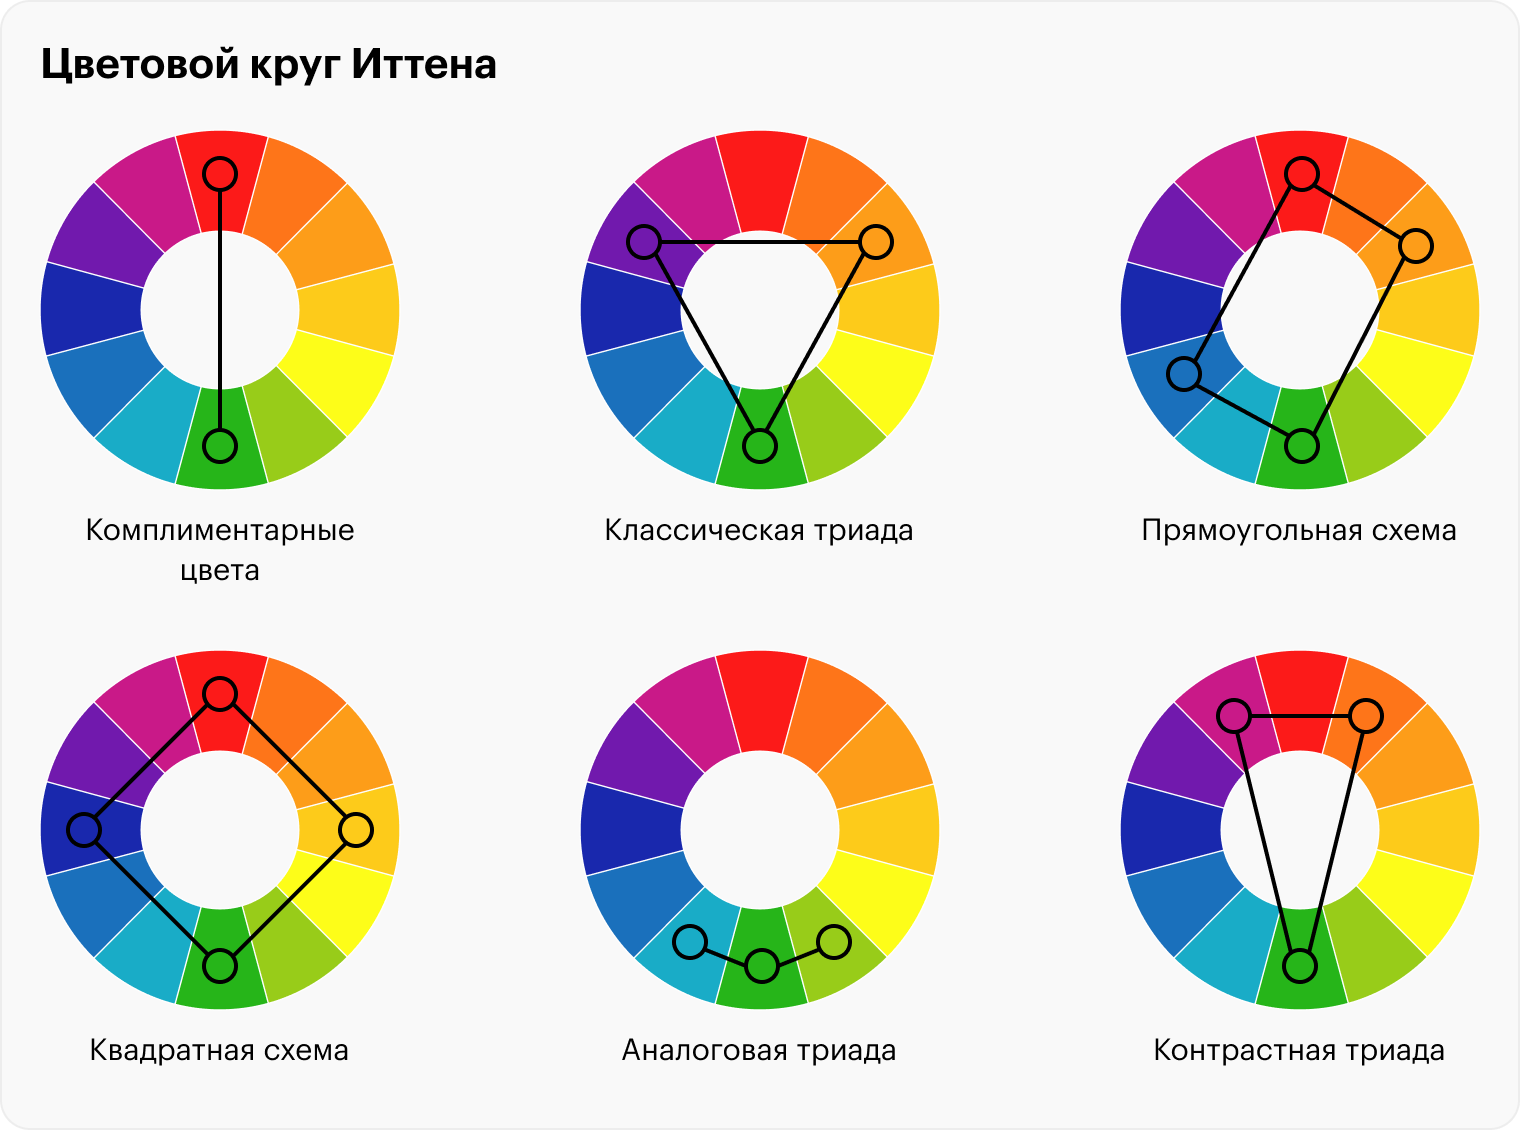 При помощи этой схемы можно подобрать подходящее сочетание цветов. Это могут быть цвета, расположенные друг напротив друга, например синий и желтый. Такое сочетание называется комплементарным. Этот способ подходит для подбора контрастных цветов